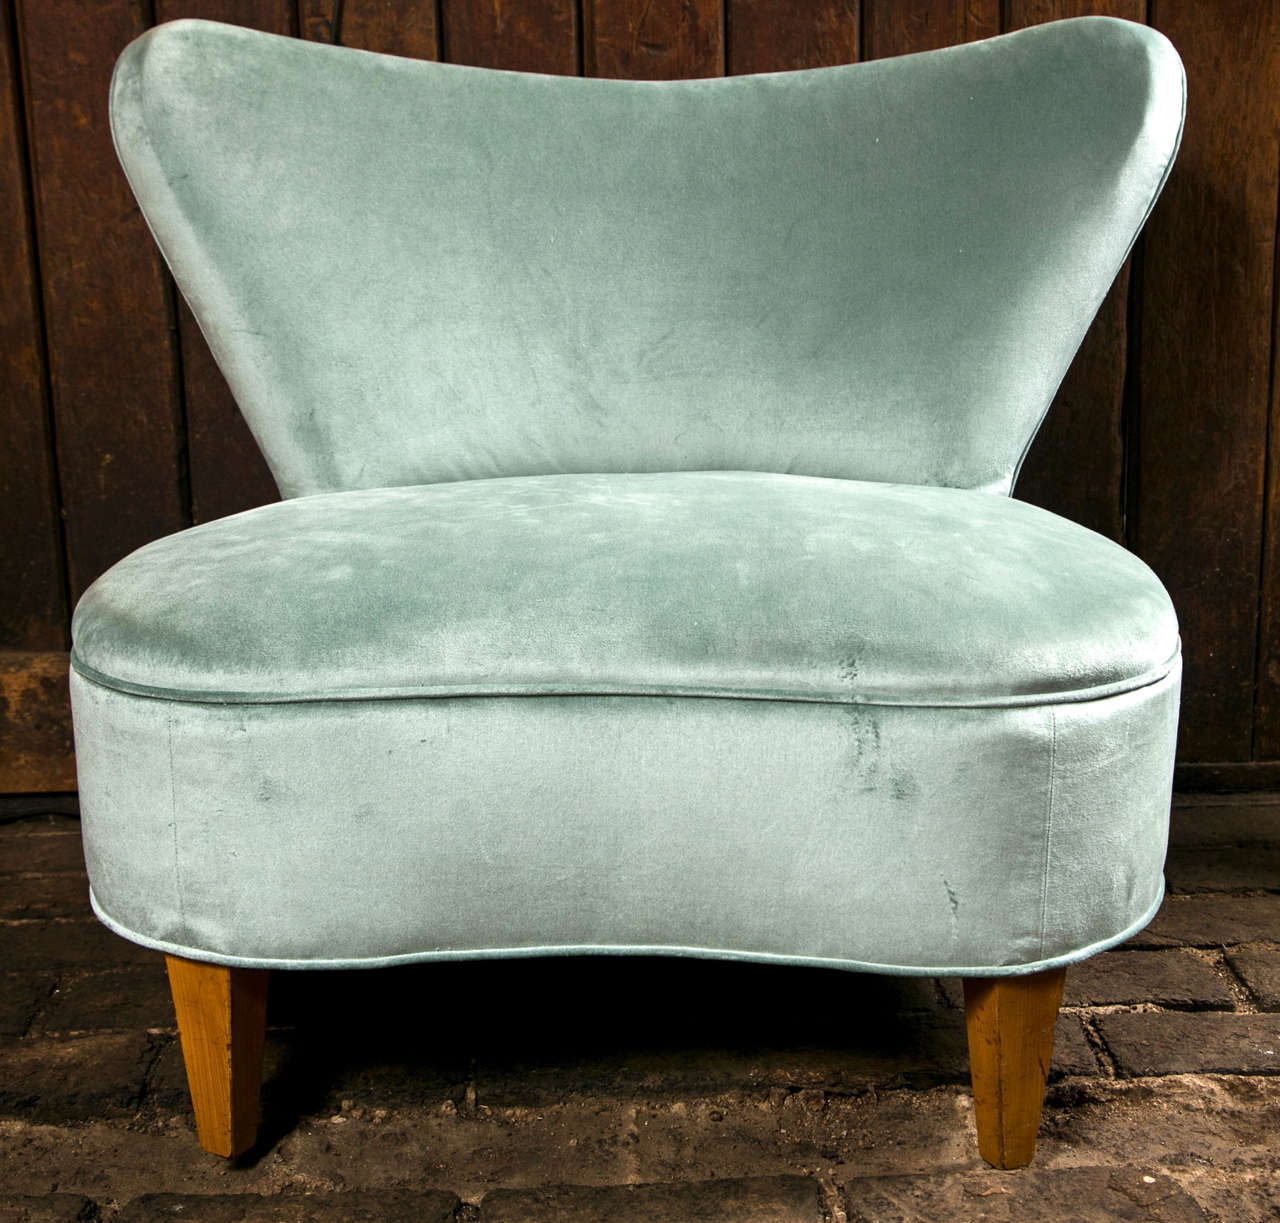 Newly reupholstered in blue/grey cotton velvet, 1940's glamorous slipper chair.